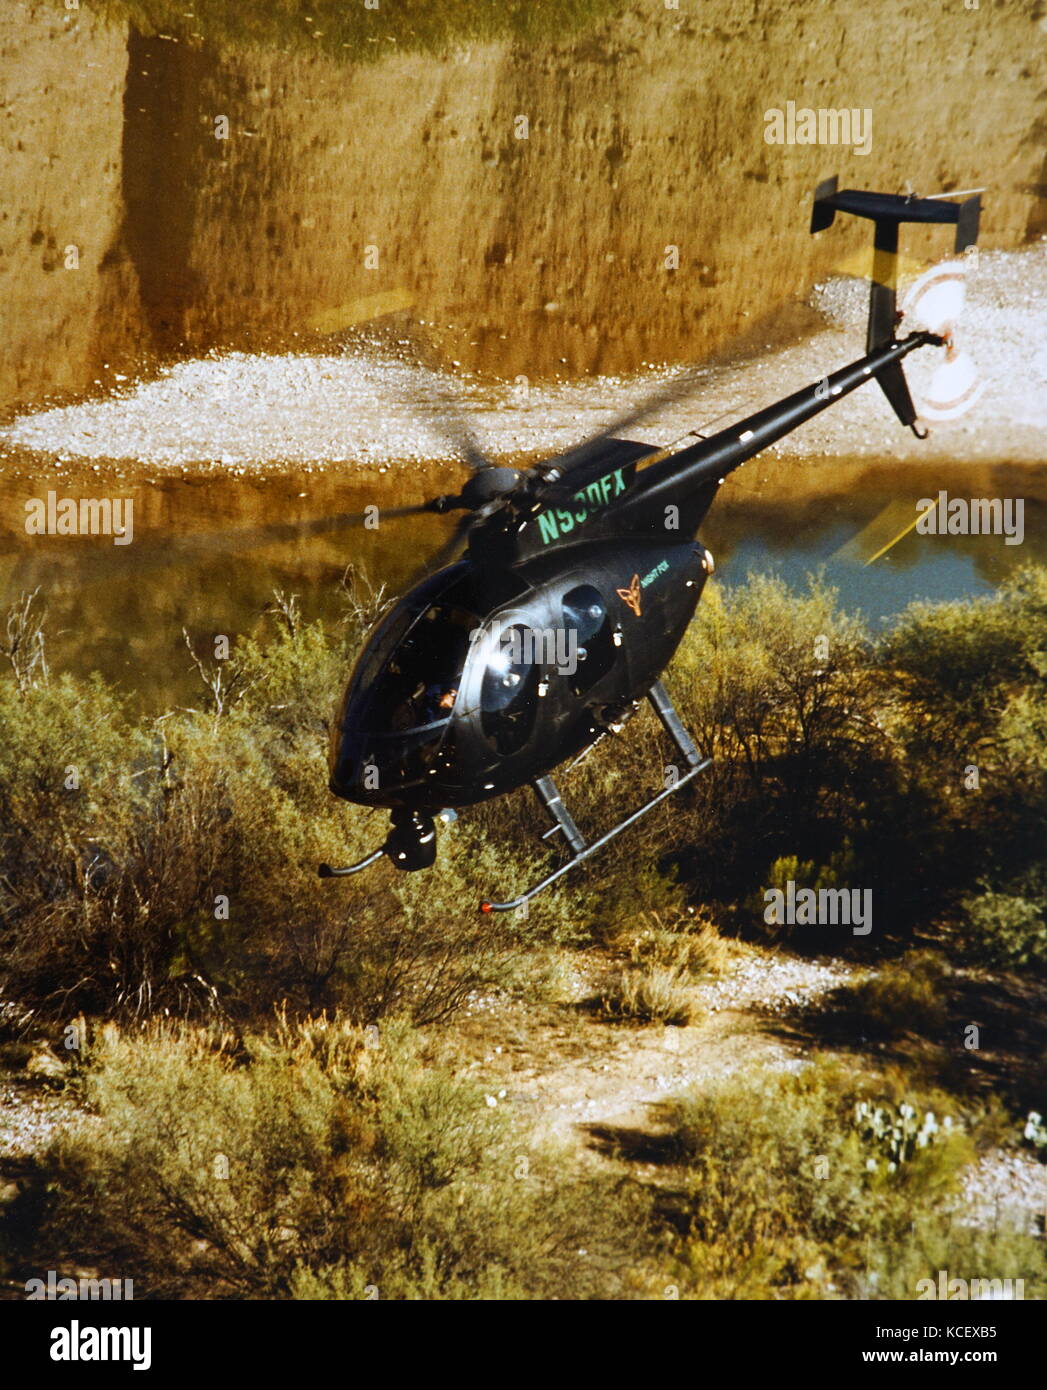 Fotografia scattata da un elicottero MD. MD Helicopters, Inc. è un americano produttore aerospaziale che produce elicotteri principalmente per uso commerciale. In data xx secolo Foto Stock